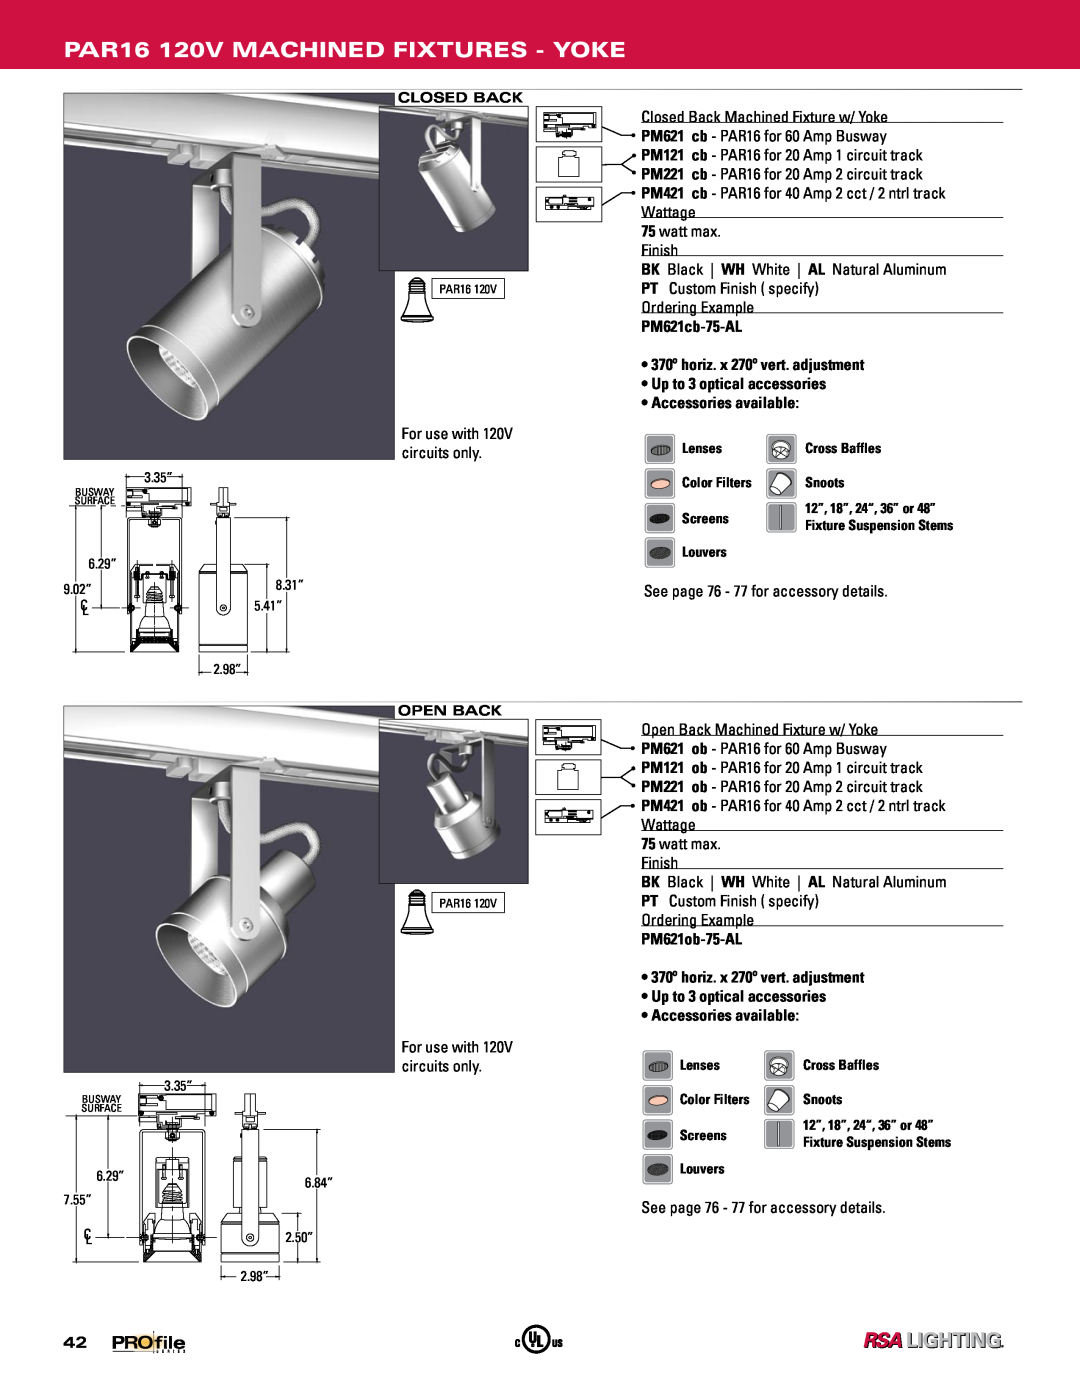 Profile Machined Aluminum Fixtures manual PAR16 120V MACHINED FIXTURES - YOKE, PM621cb-75-AL, PM621ob-75-AL 